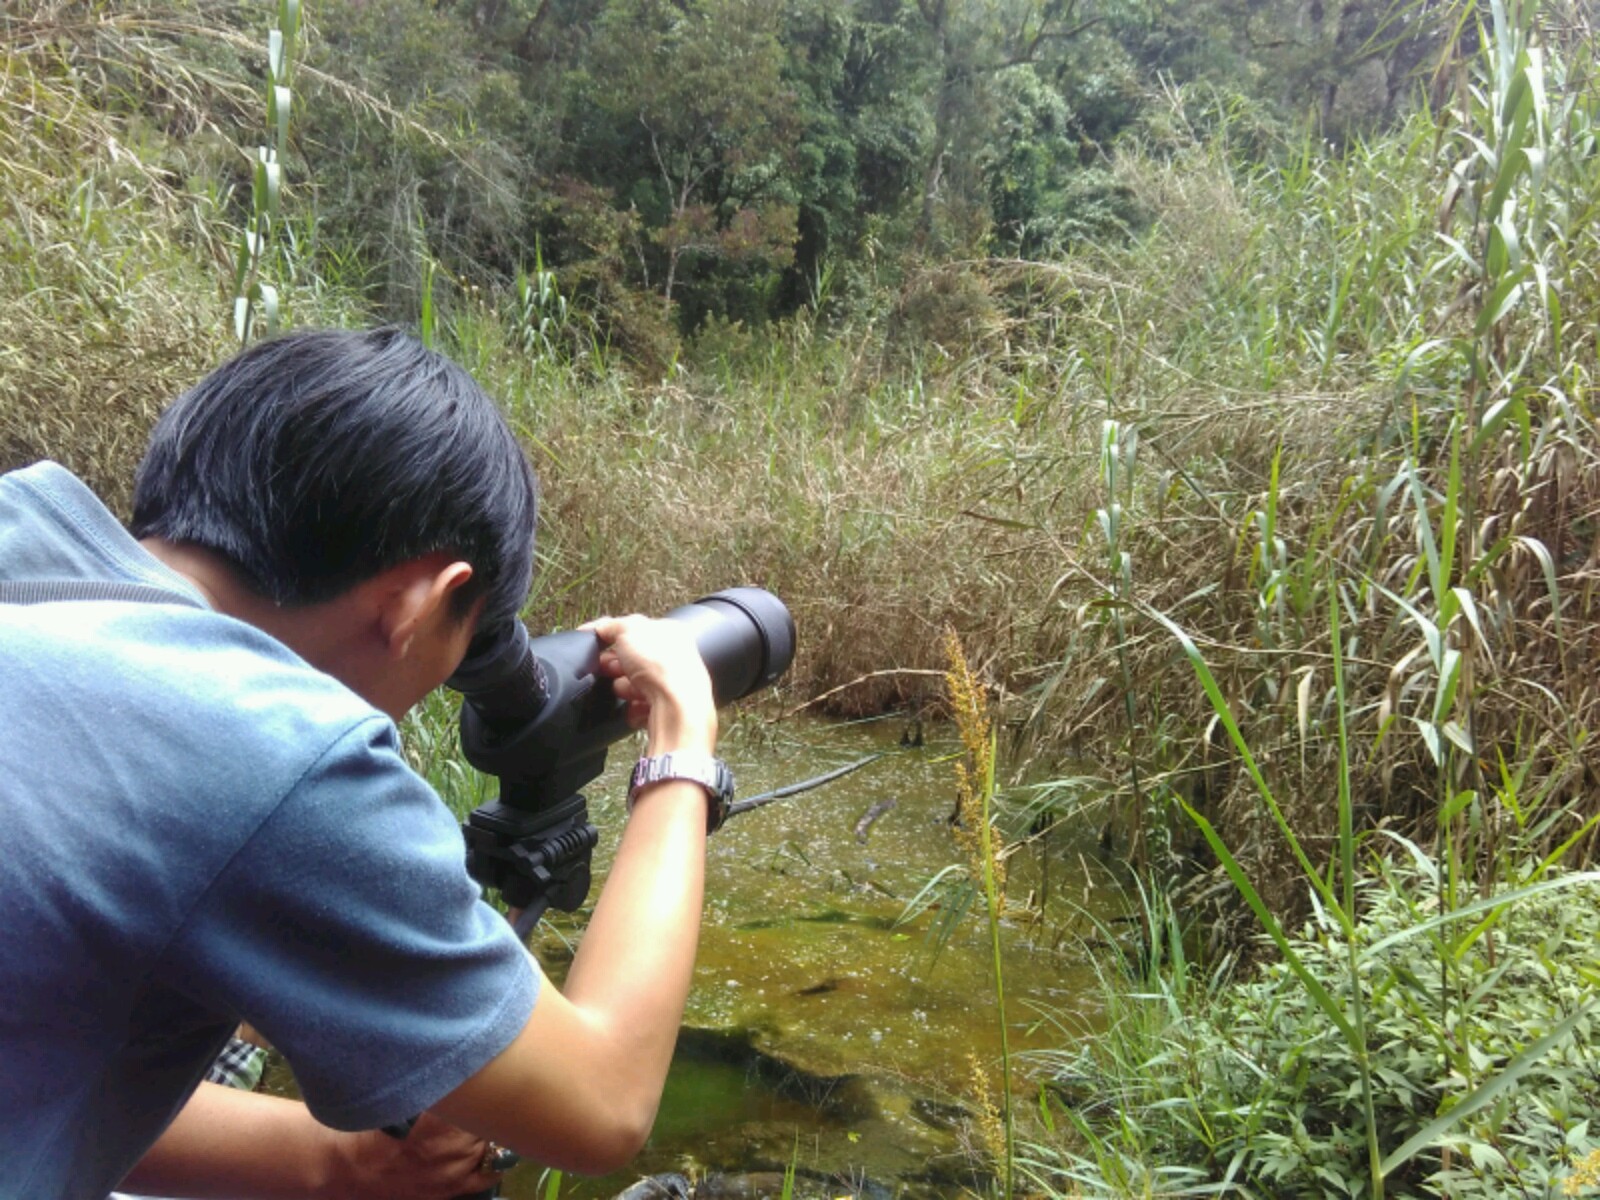 Seorang peneliti sedang mengamati burung menggunakan teropong di kawasan Cagar Alam Darajat, Garut, Jawa Barat, pada Maret 2016. Kawasan tersebut telah dilakukan inventarisasi dan pemetaan guna mendapatkan data tentang flora dan fauna yang masih ada. Foto : Donny Iqbal